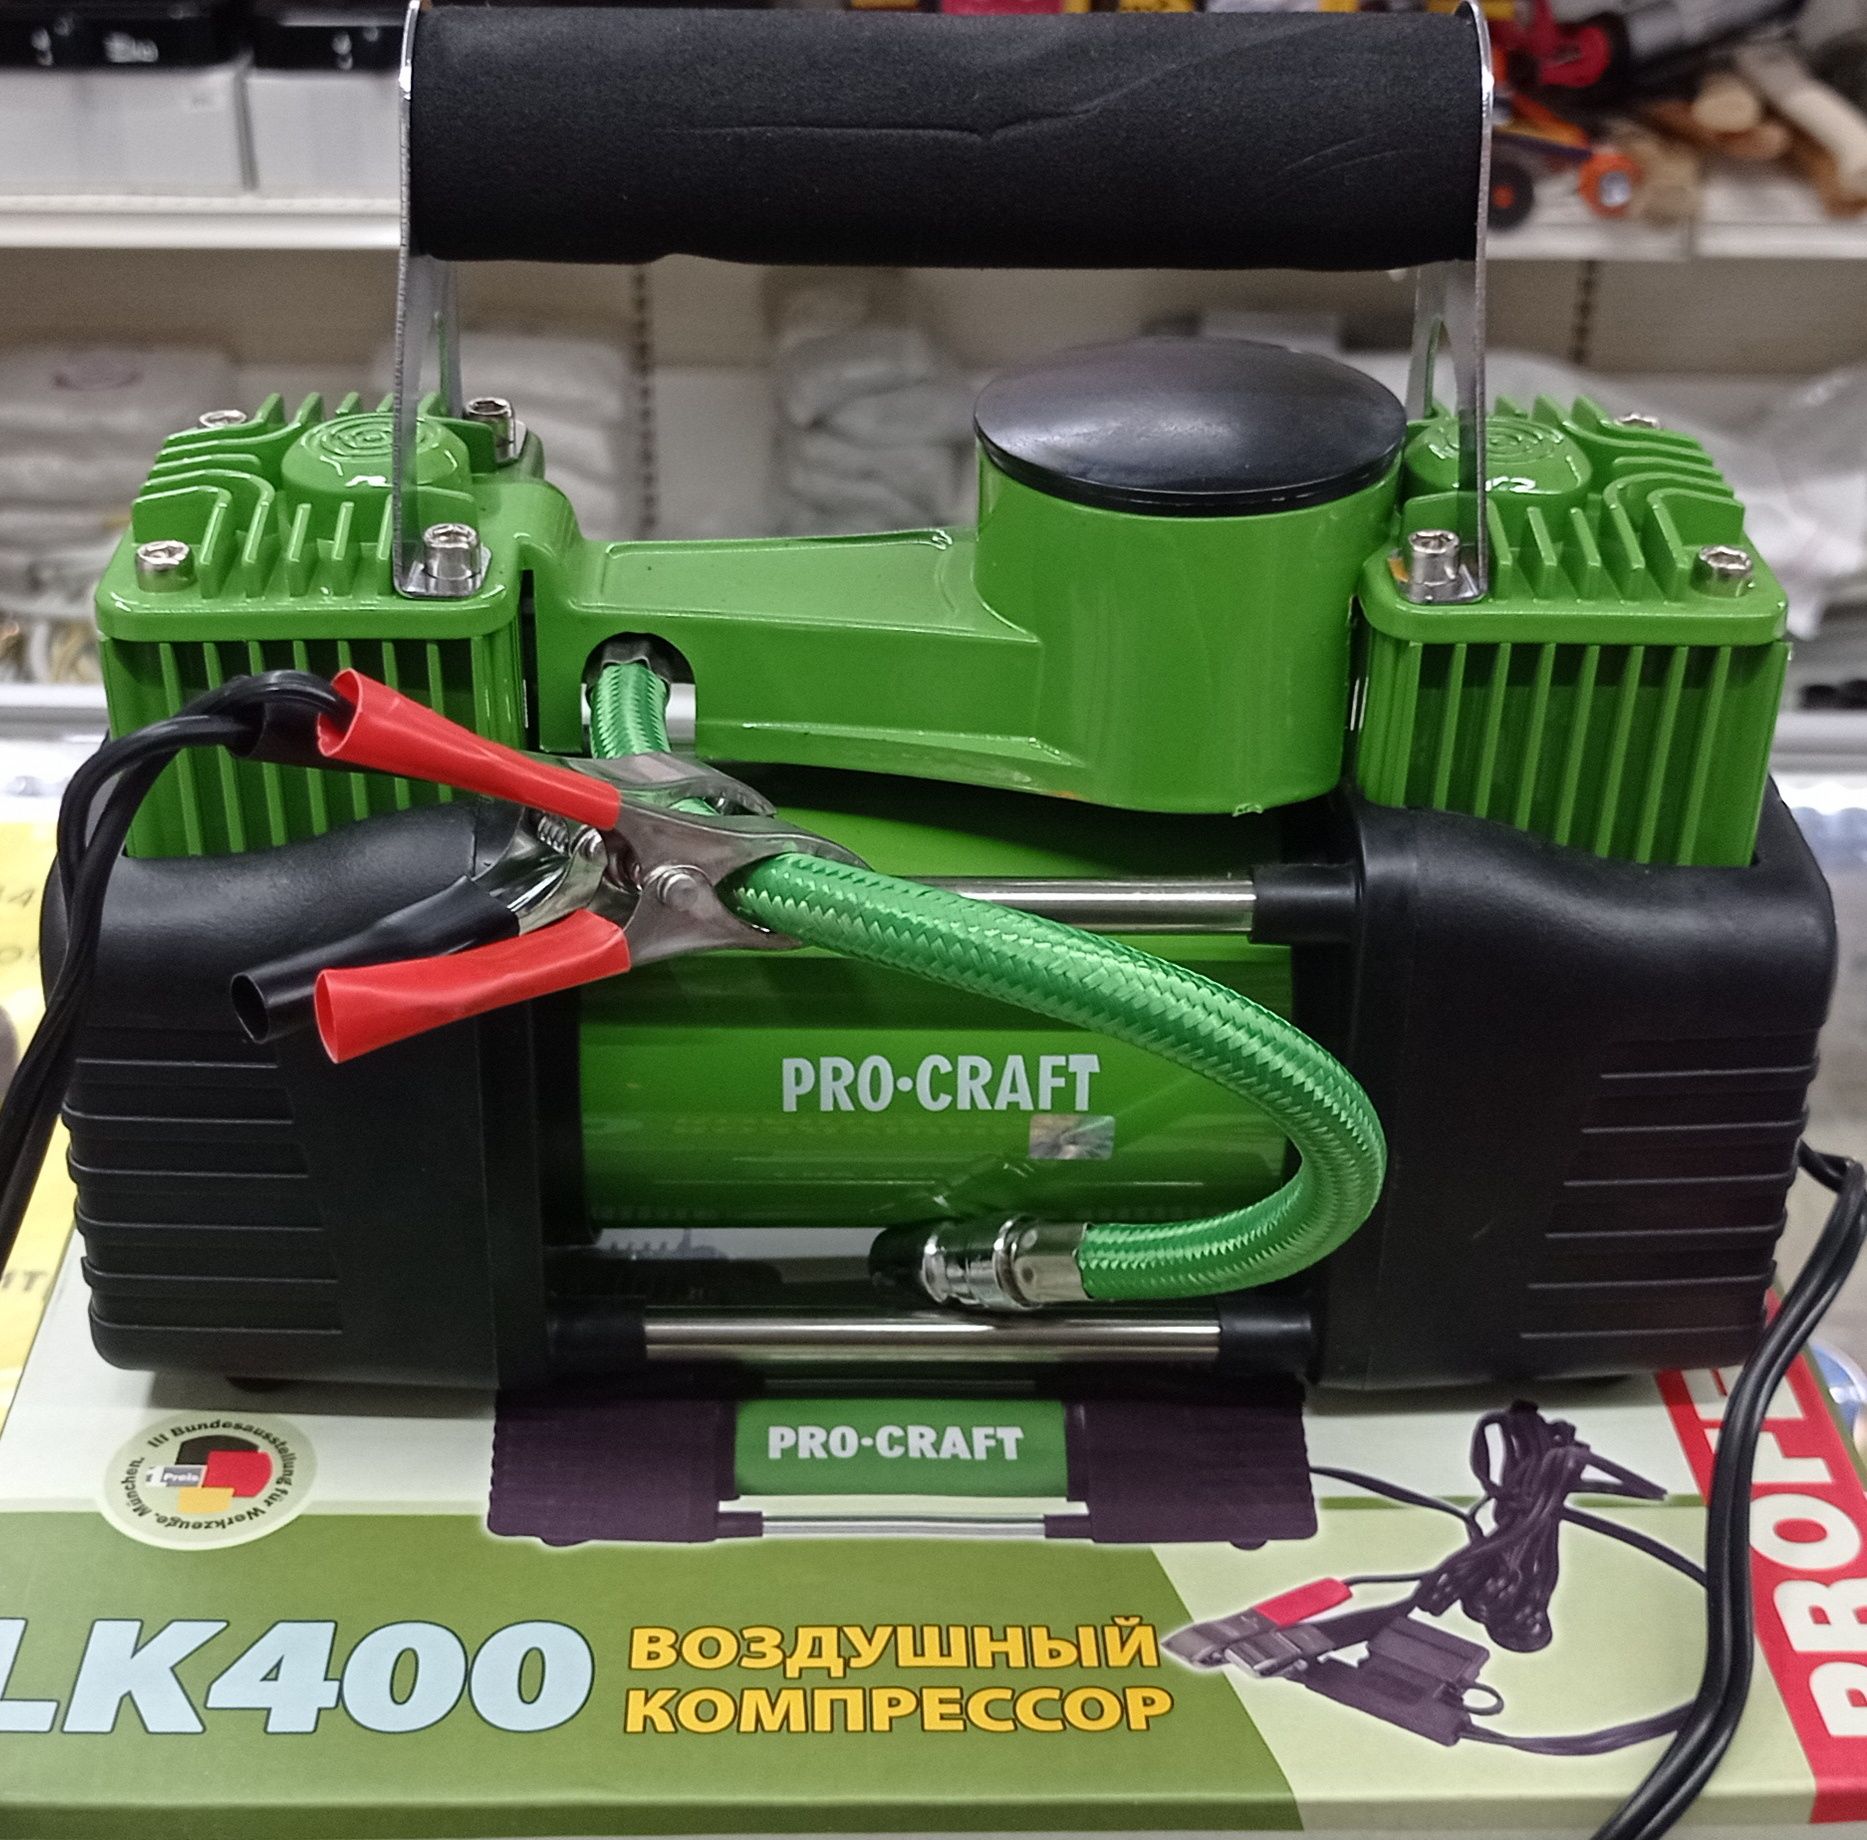 Автомобильный компрессор Procraft LK400